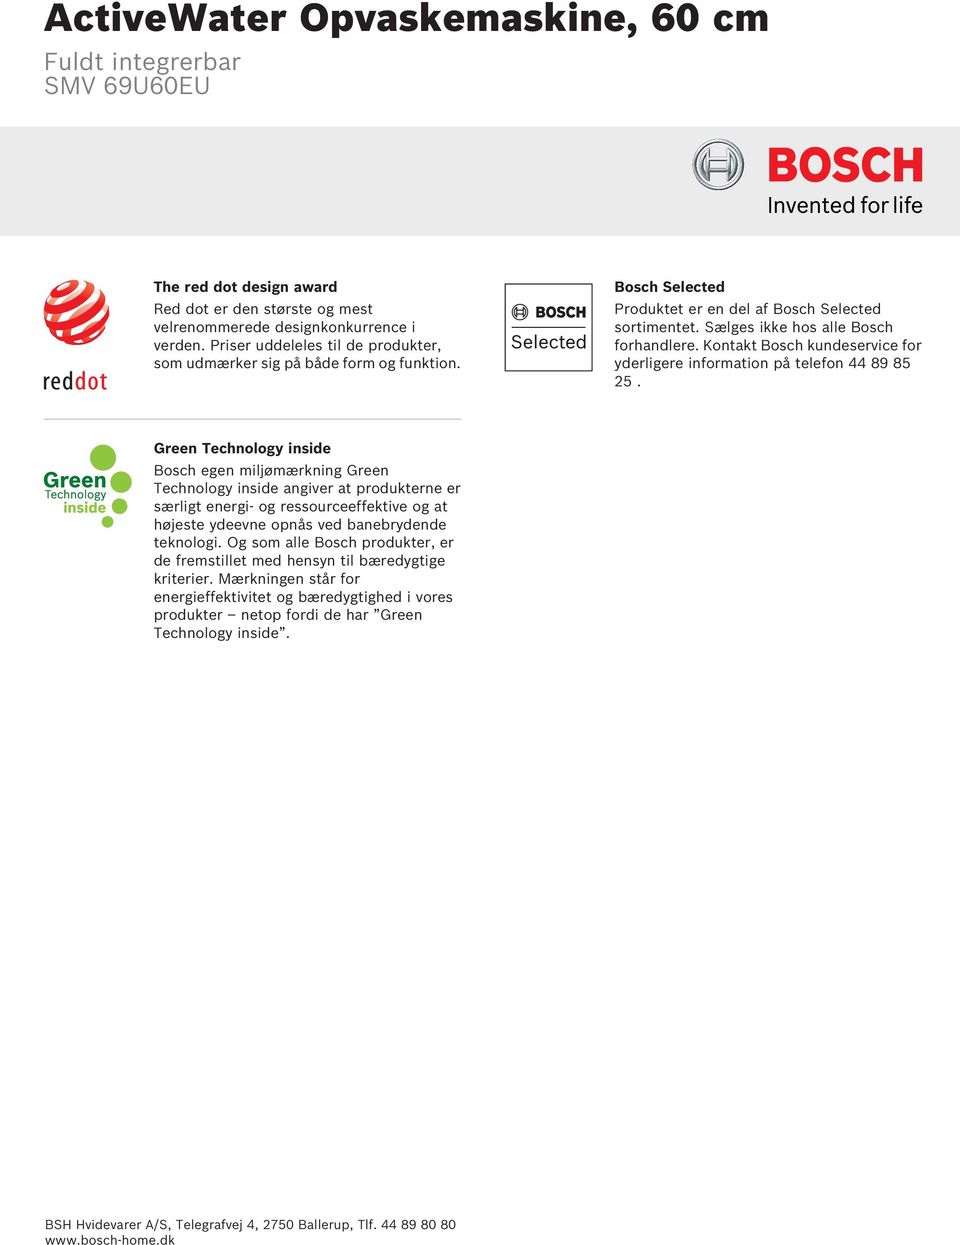 Green Technology inside Bosch egen miljømærkning Green Technology inside angiver at produkterne er særligt energi- og ressourceeffektive og at højeste ydeevne opnås ved banebrydende